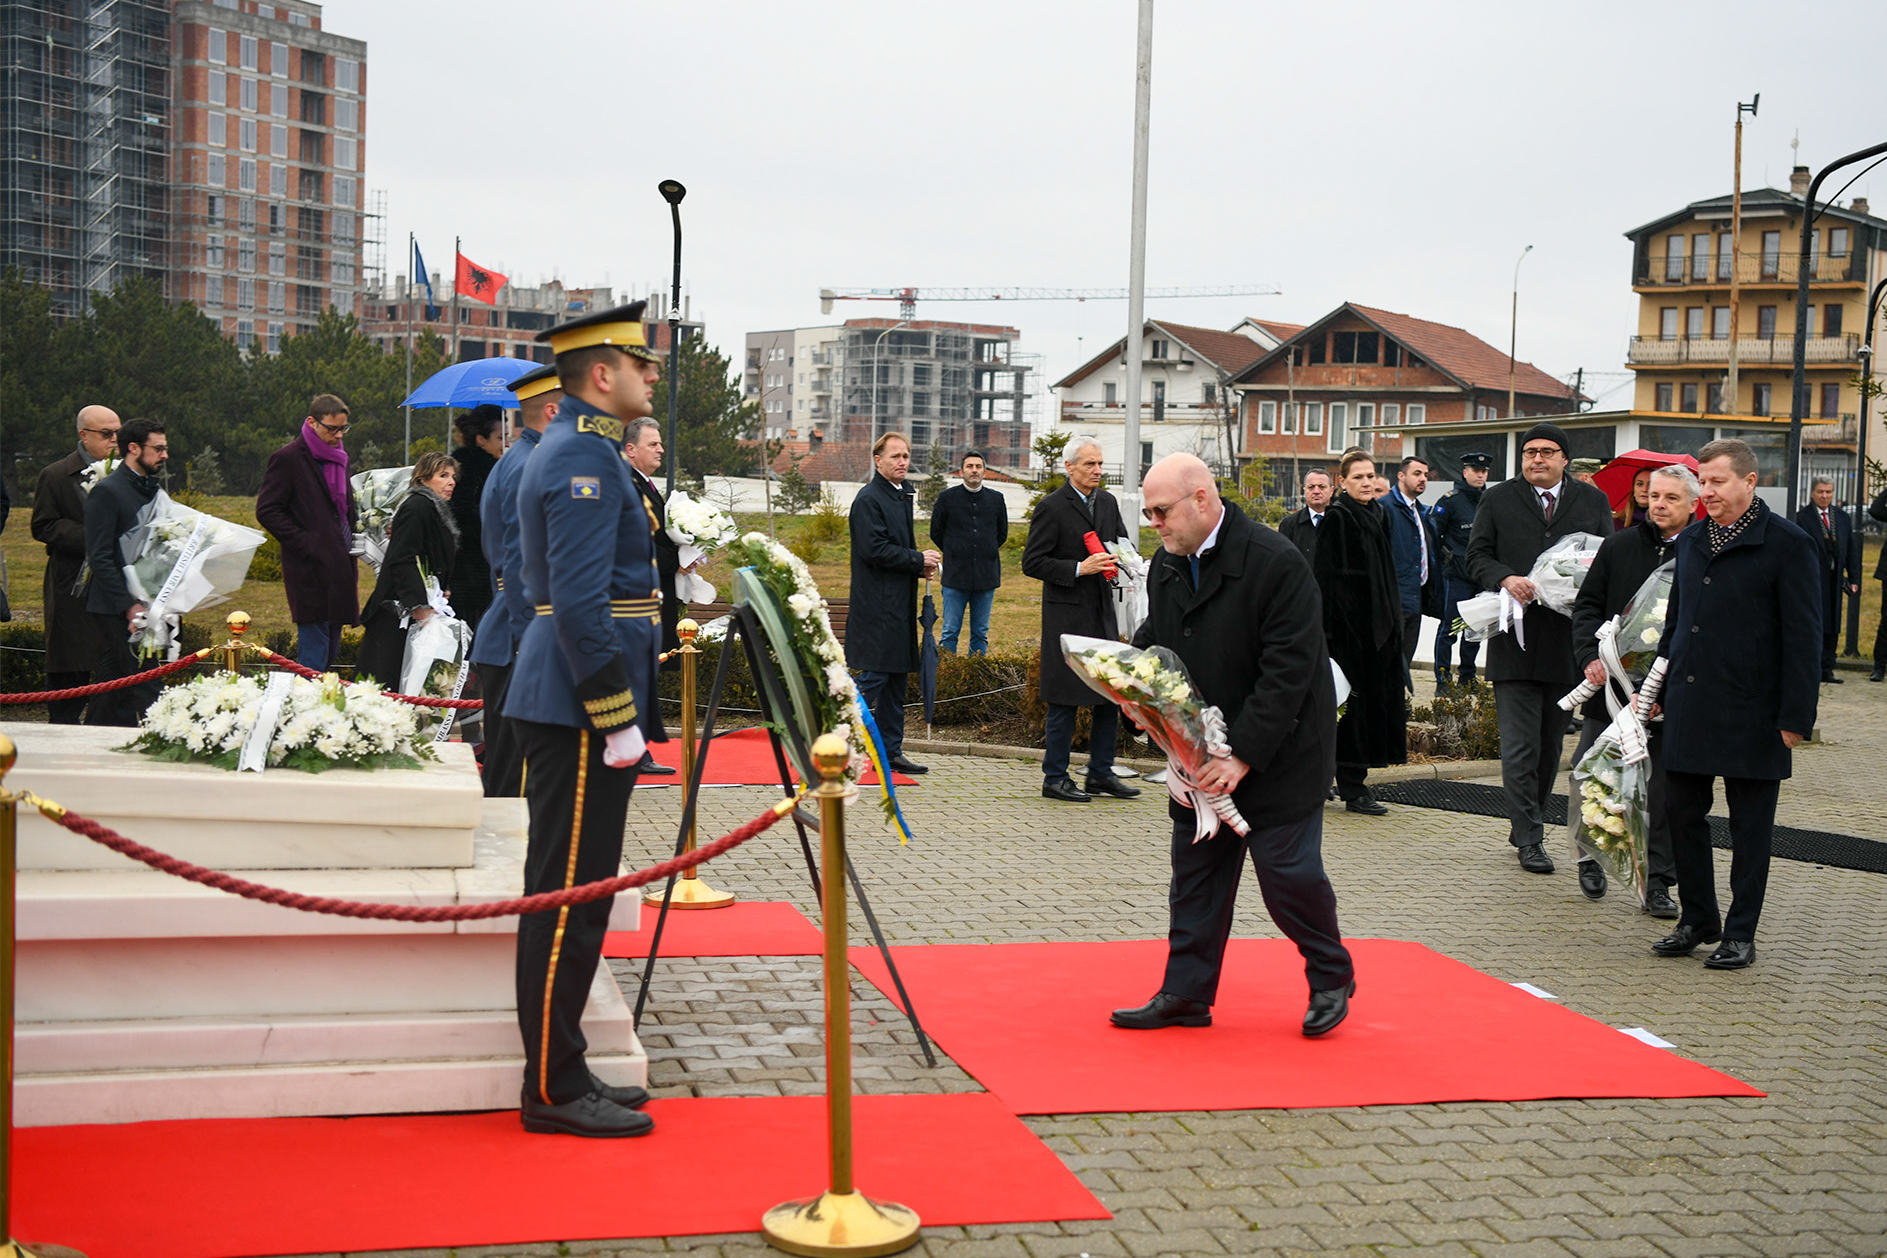 Presidentja: Presidenti Rugova është vizionari i lirisë, demokracisë dhe pavarësisë së Kosovës, i cili mbetet udhërrëfyes i yni